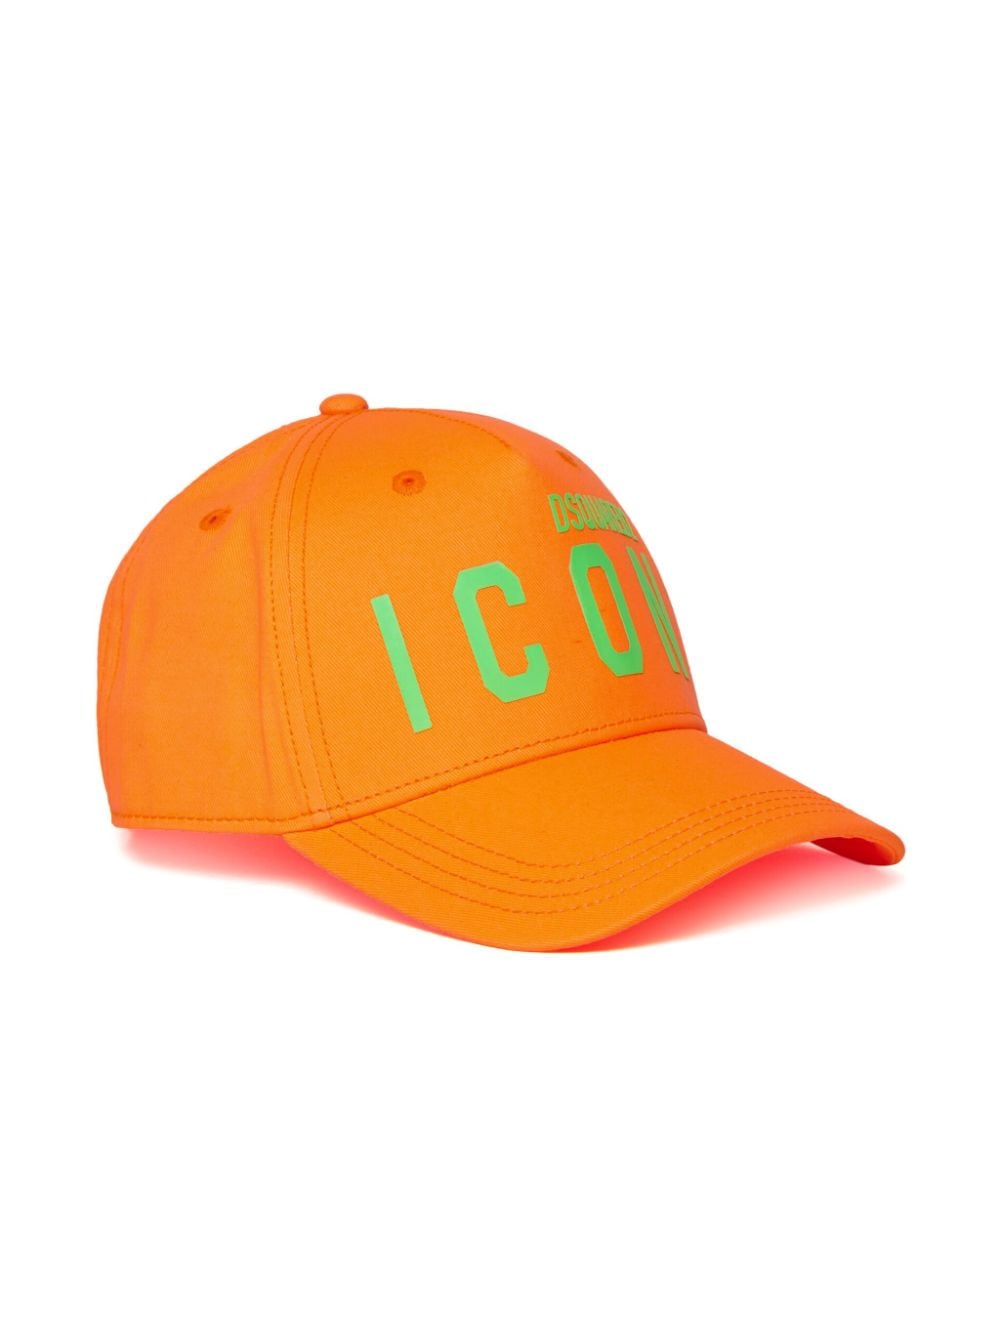 Cappello arancione unisex